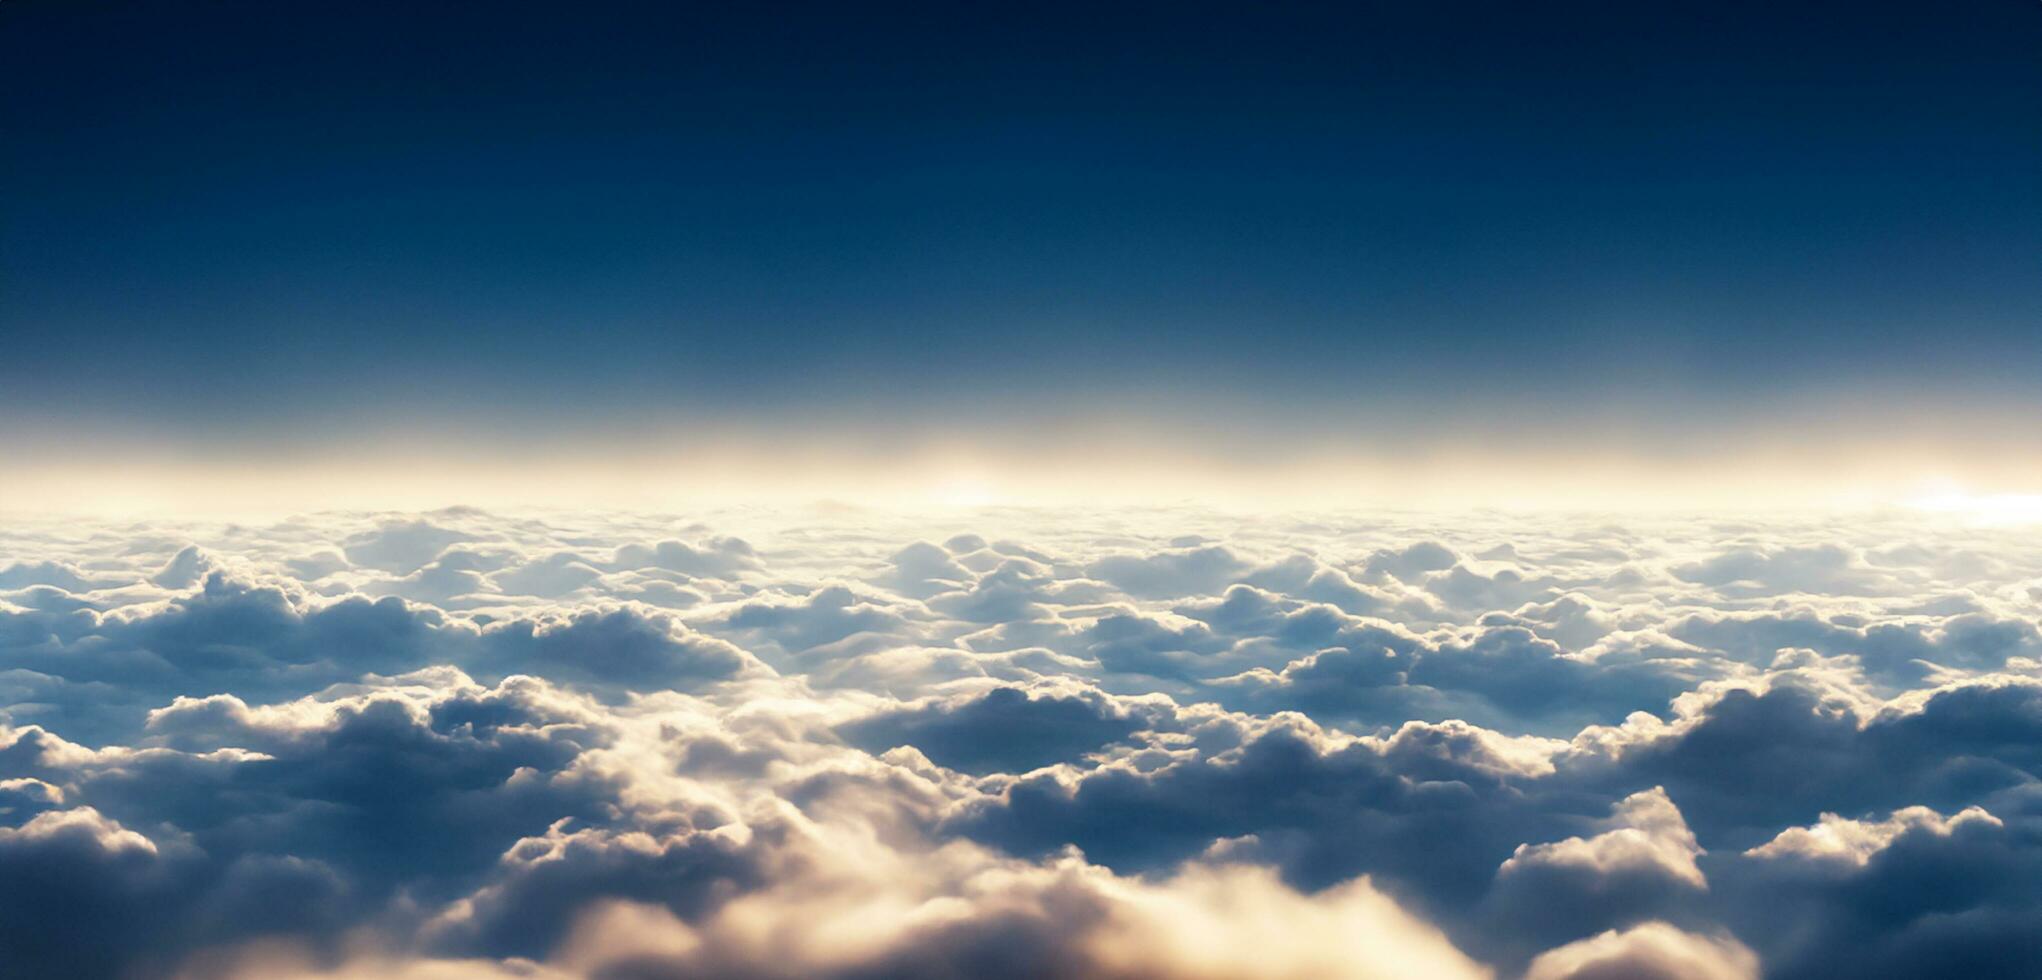 nuvens dentro a céu troposfera mesosfera ionosfera exosfera níveis do altura acima aviões céu atmosfera estratosfera foto